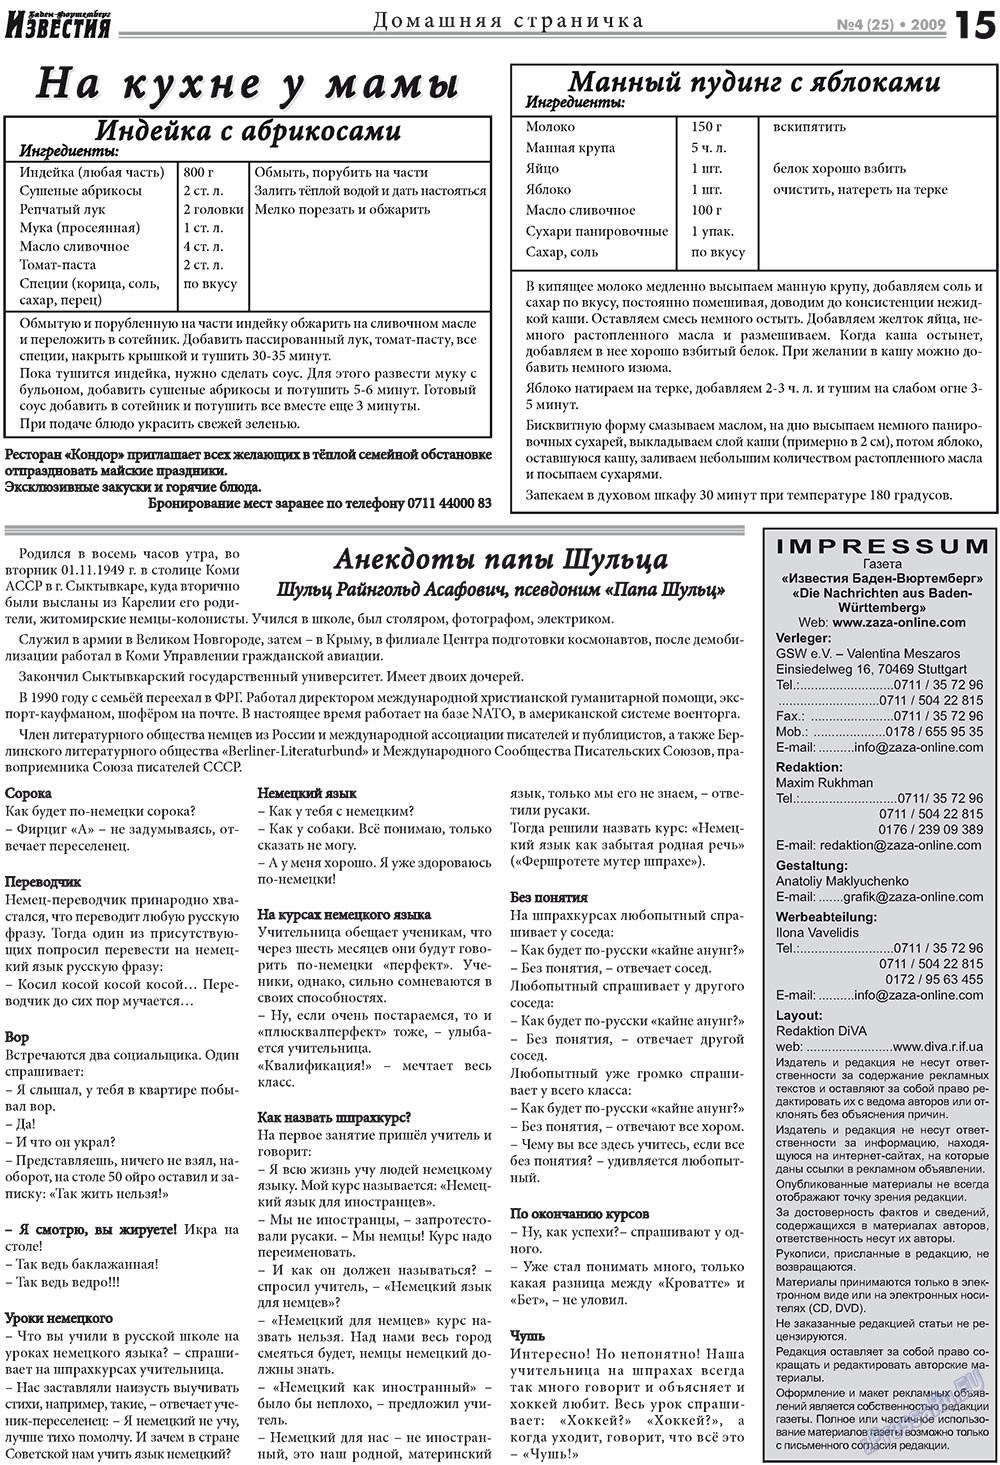 Известия BW, газета. 2009 №4 стр.15